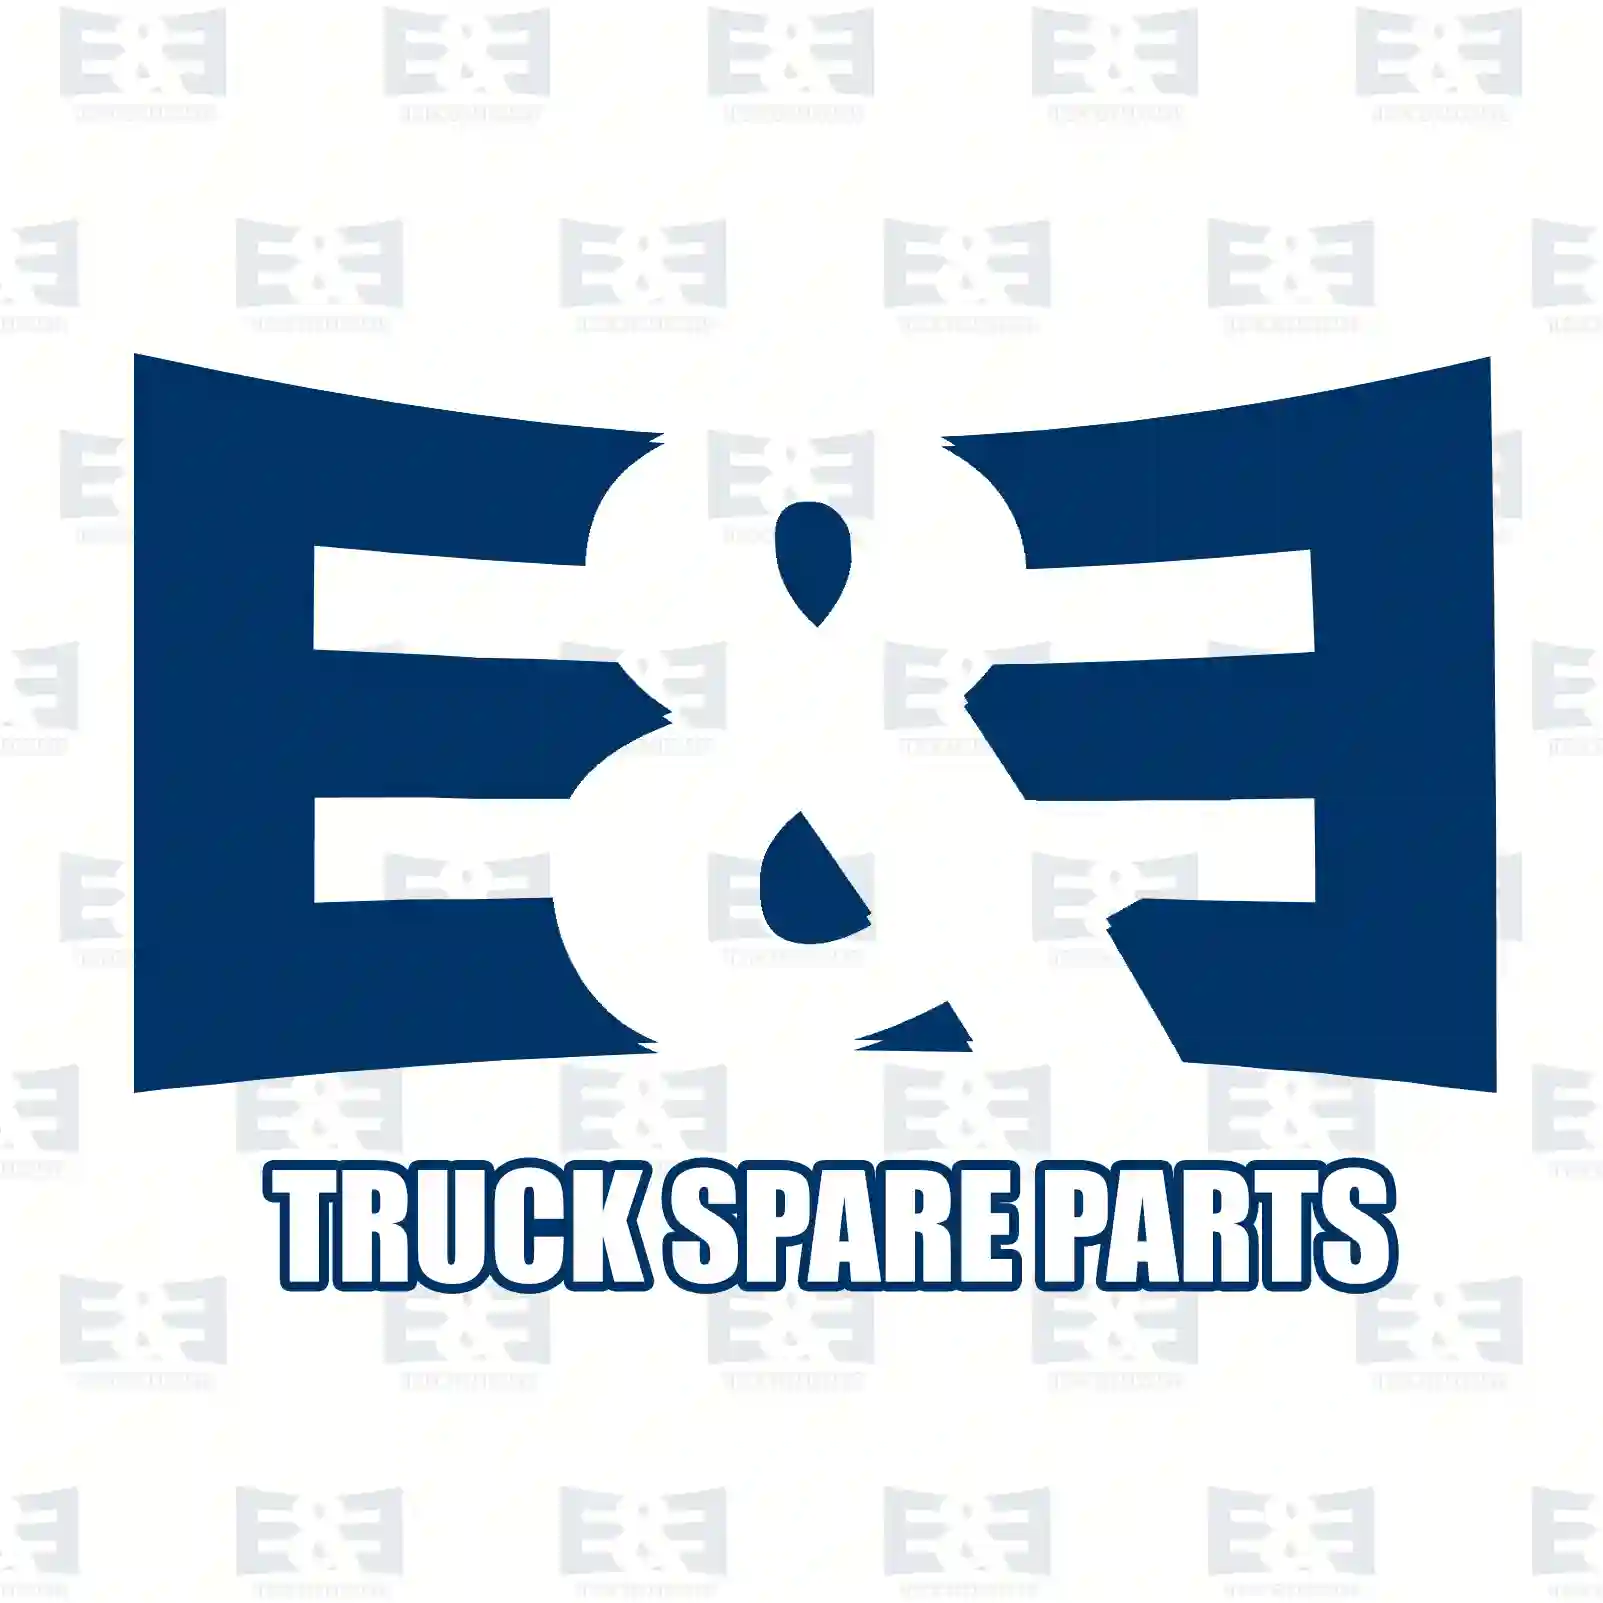 NOx Sensor, 2E2290051, 51154080011, 51154080018, ||  2E2290051 E&E Truck Spare Parts | Truck Spare Parts, Auotomotive Spare Parts NOx Sensor, 2E2290051, 51154080011, 51154080018, ||  2E2290051 E&E Truck Spare Parts | Truck Spare Parts, Auotomotive Spare Parts